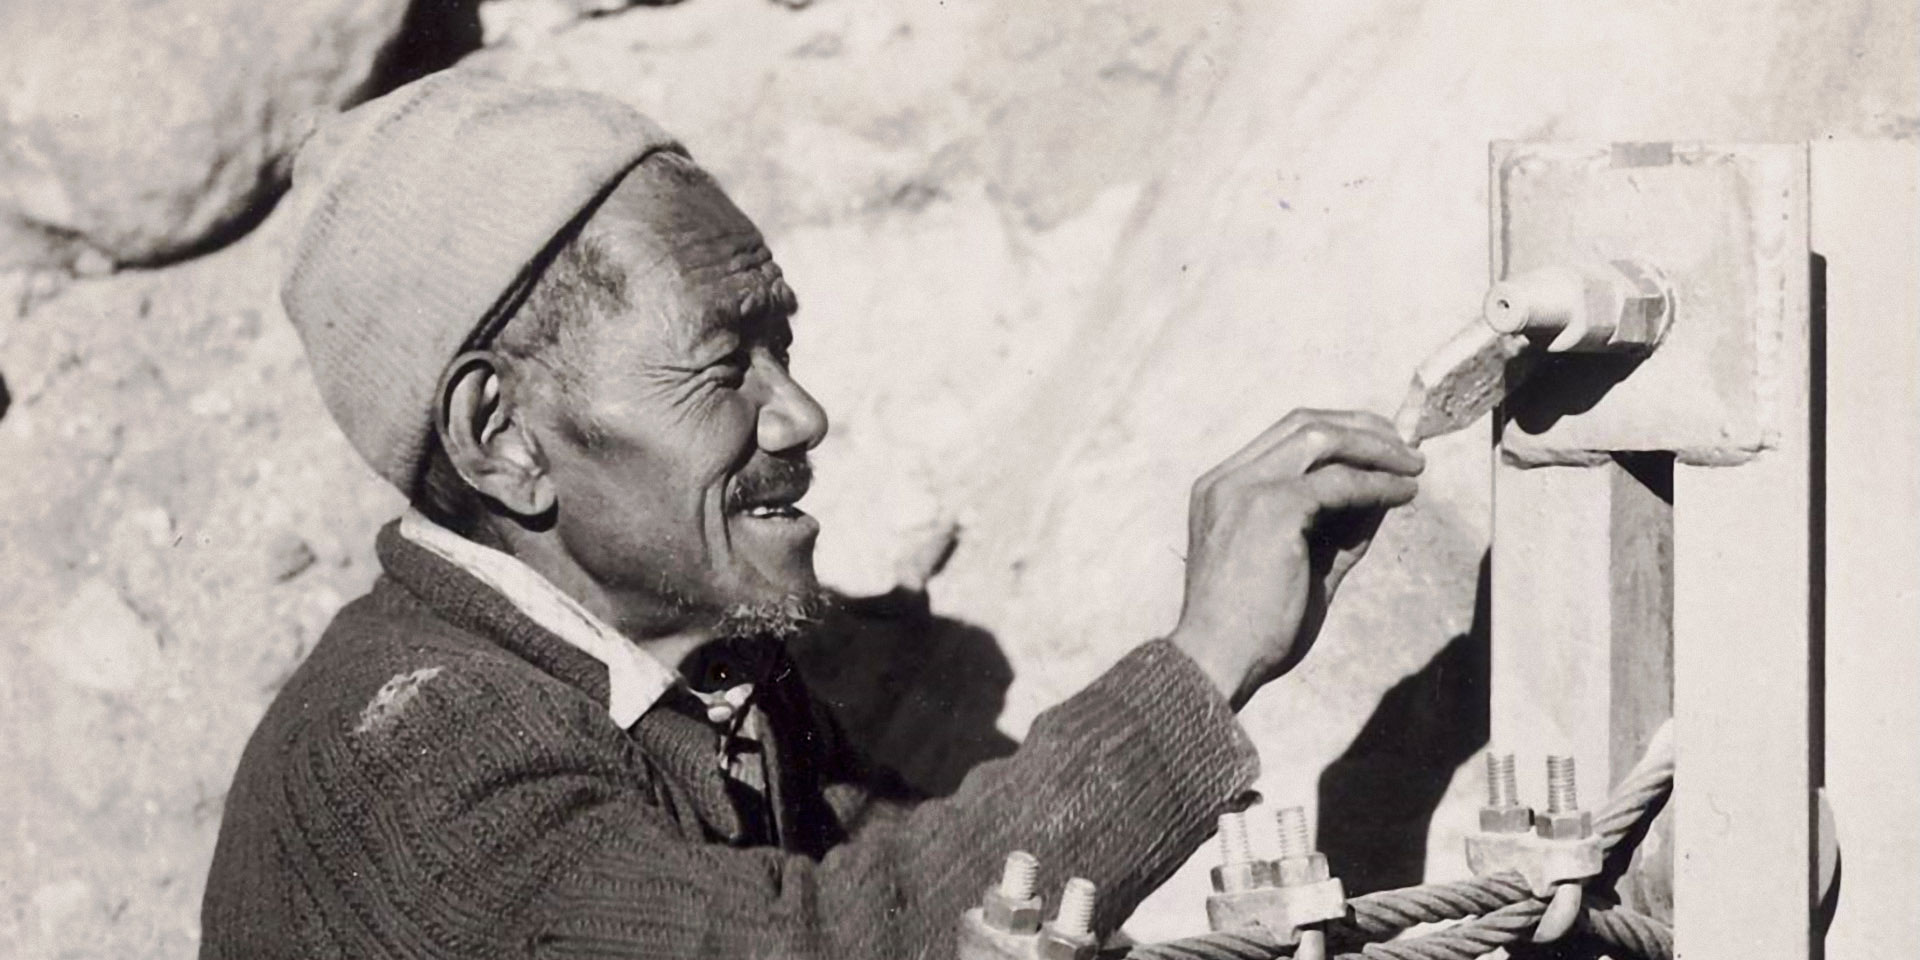 Il nepalese Ang Tsering Sherpa dipinge con vernice e pennello un elemento del ponte.